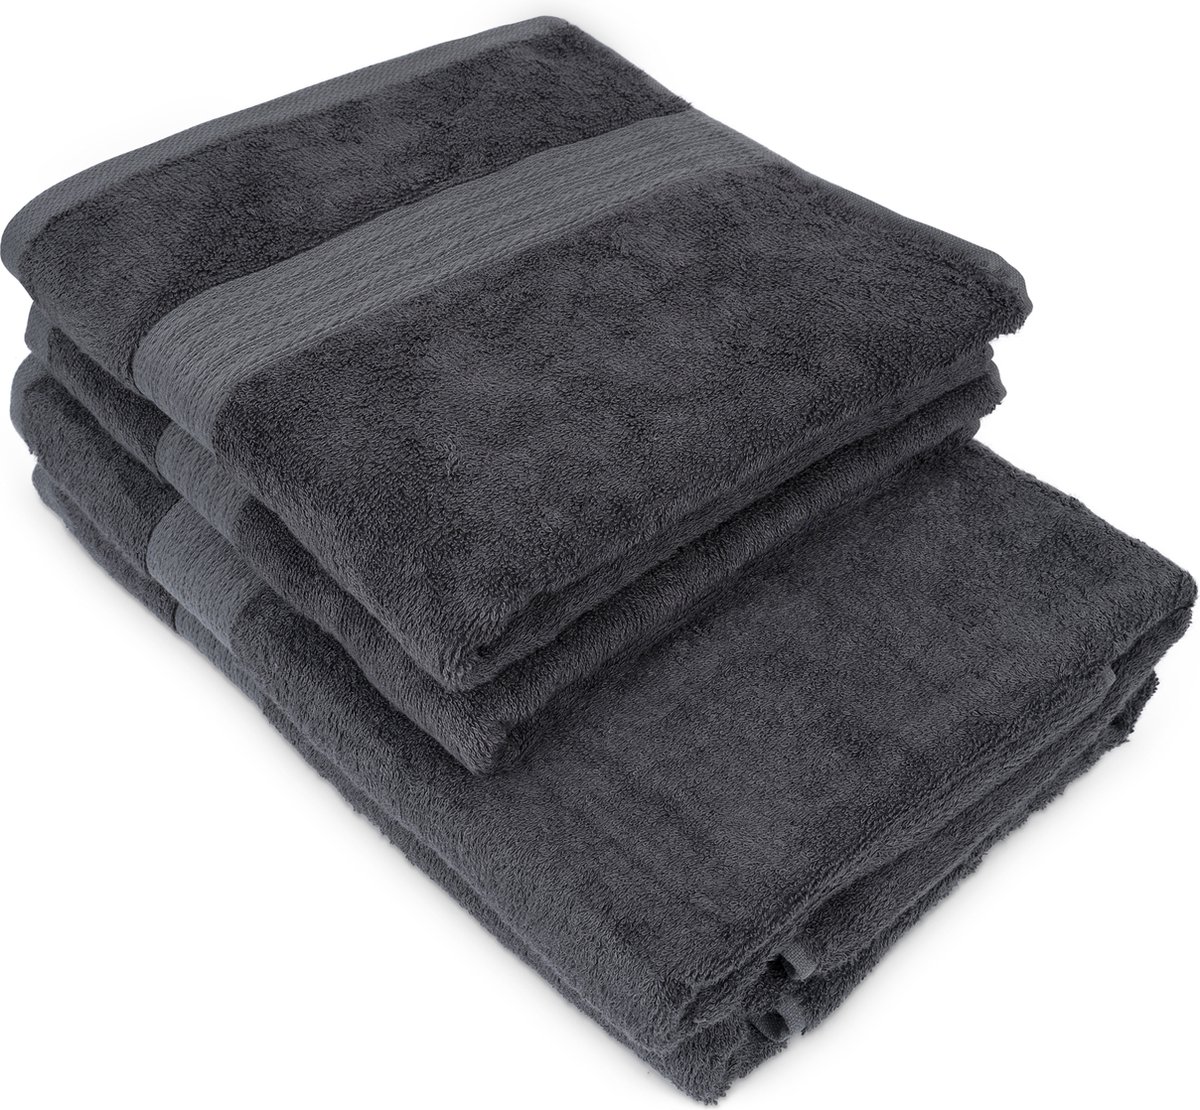 Luxdream - Badhanddoekenset 50 x 100 - Sneldrogende handdoekenset Superzacht en absorberend - Pak van 10 Handdoeken - Gemaakt van bamboe en katoen (grijs)